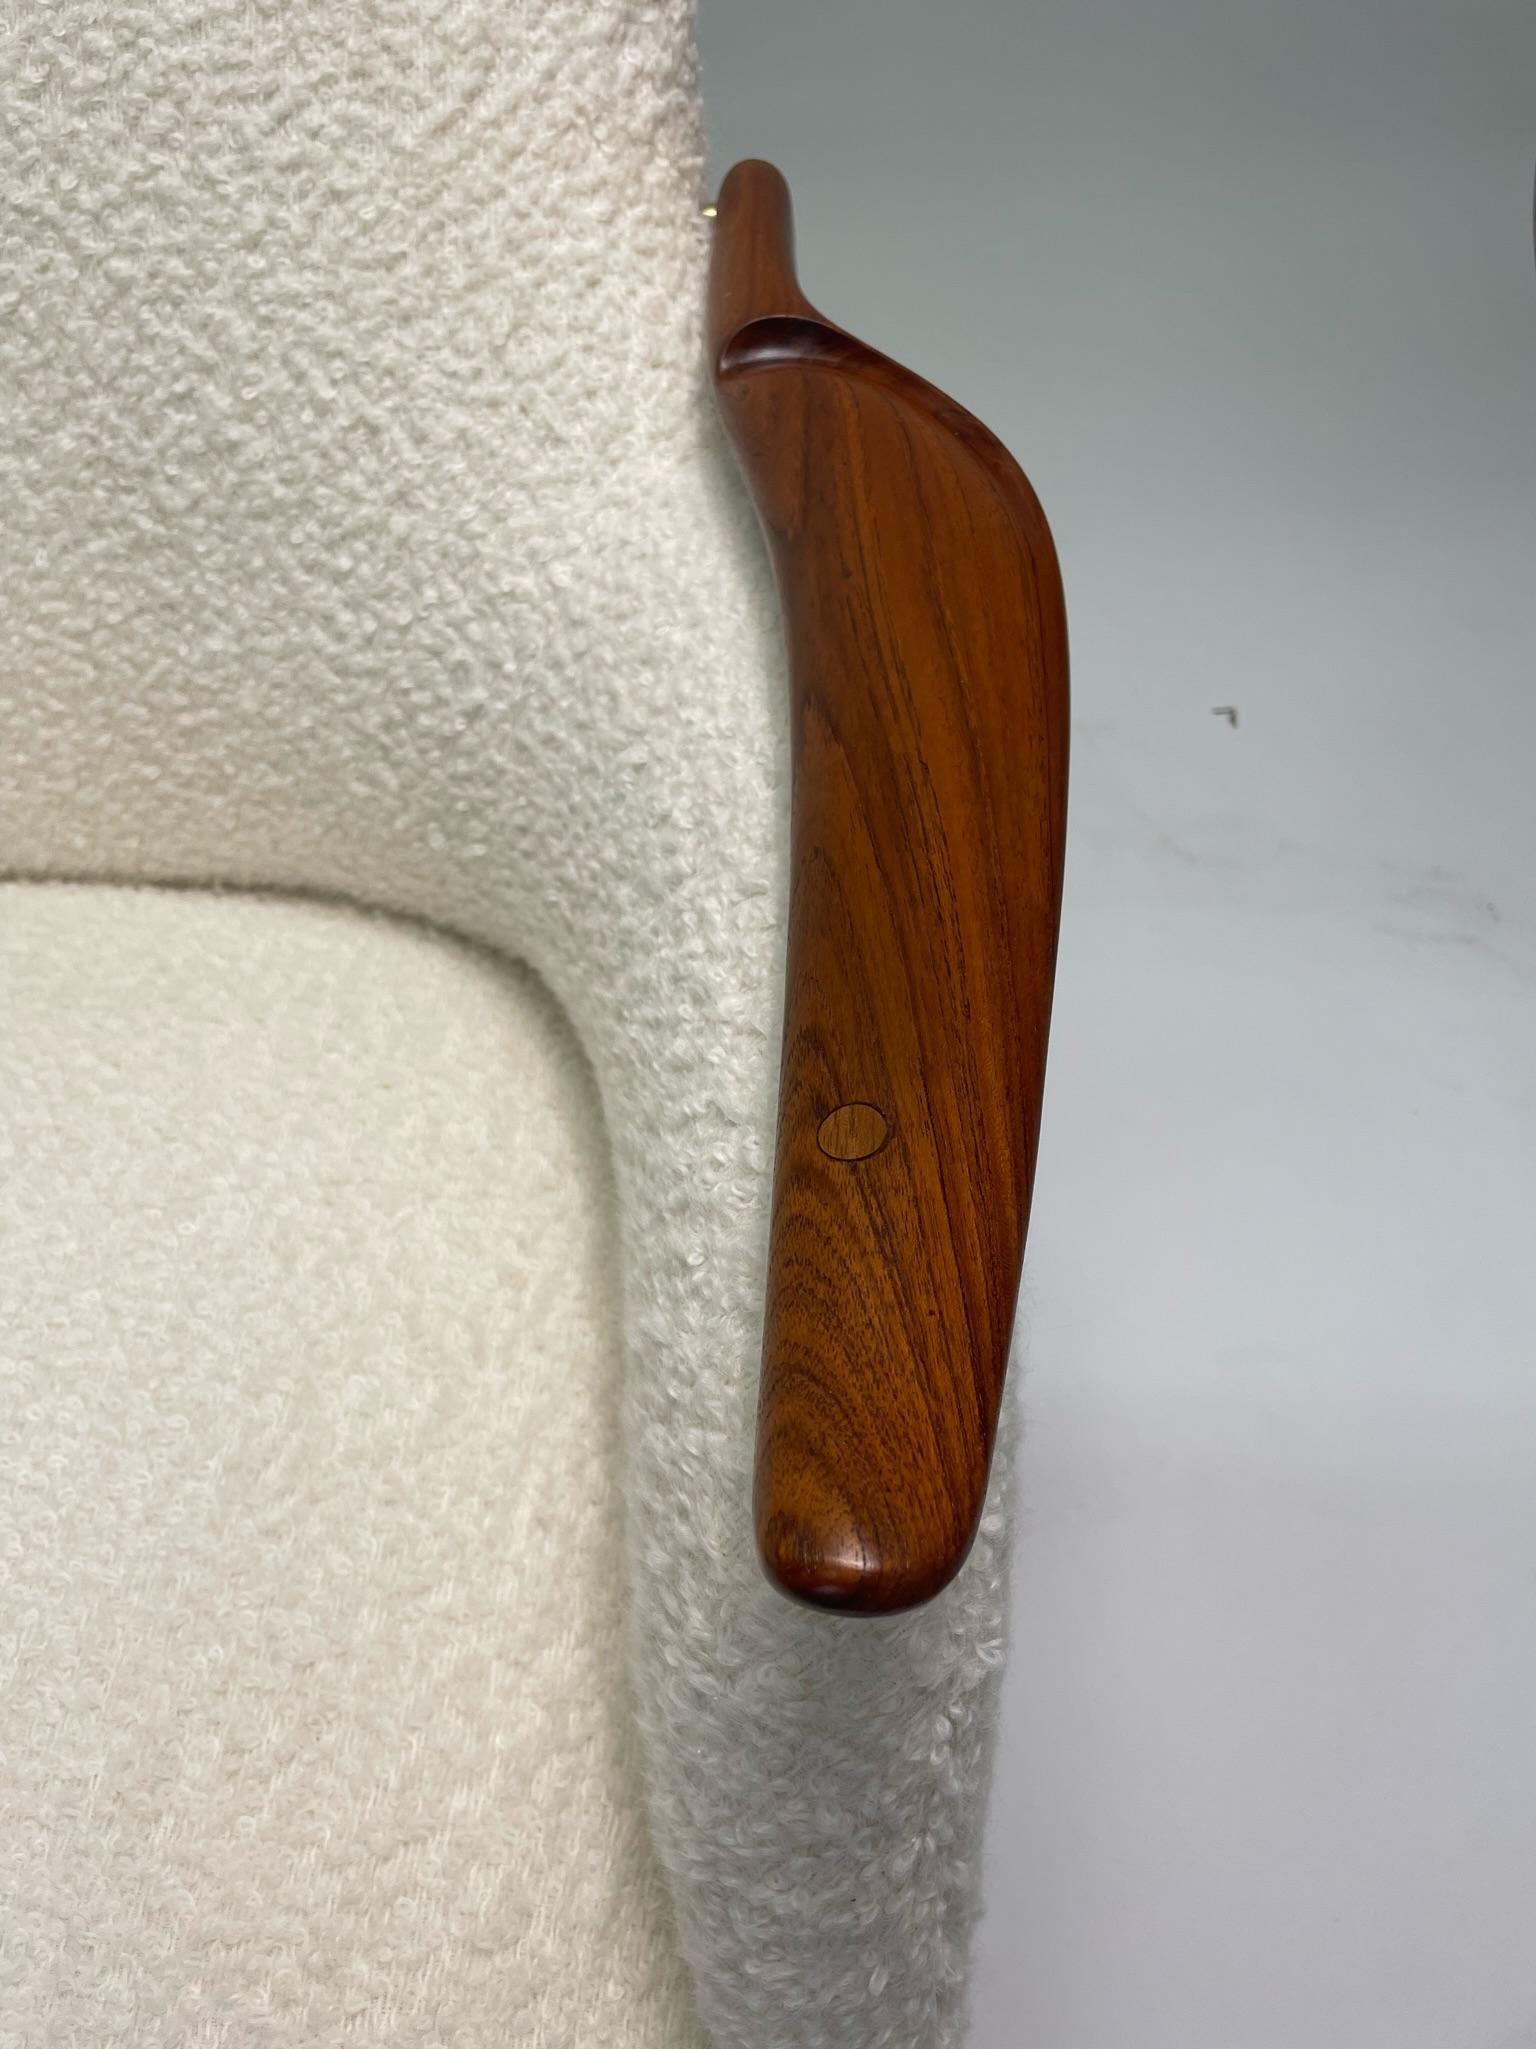 Upholstery Finn Juhl NV-53 Chair by Neils Vodder, Circa 1950's